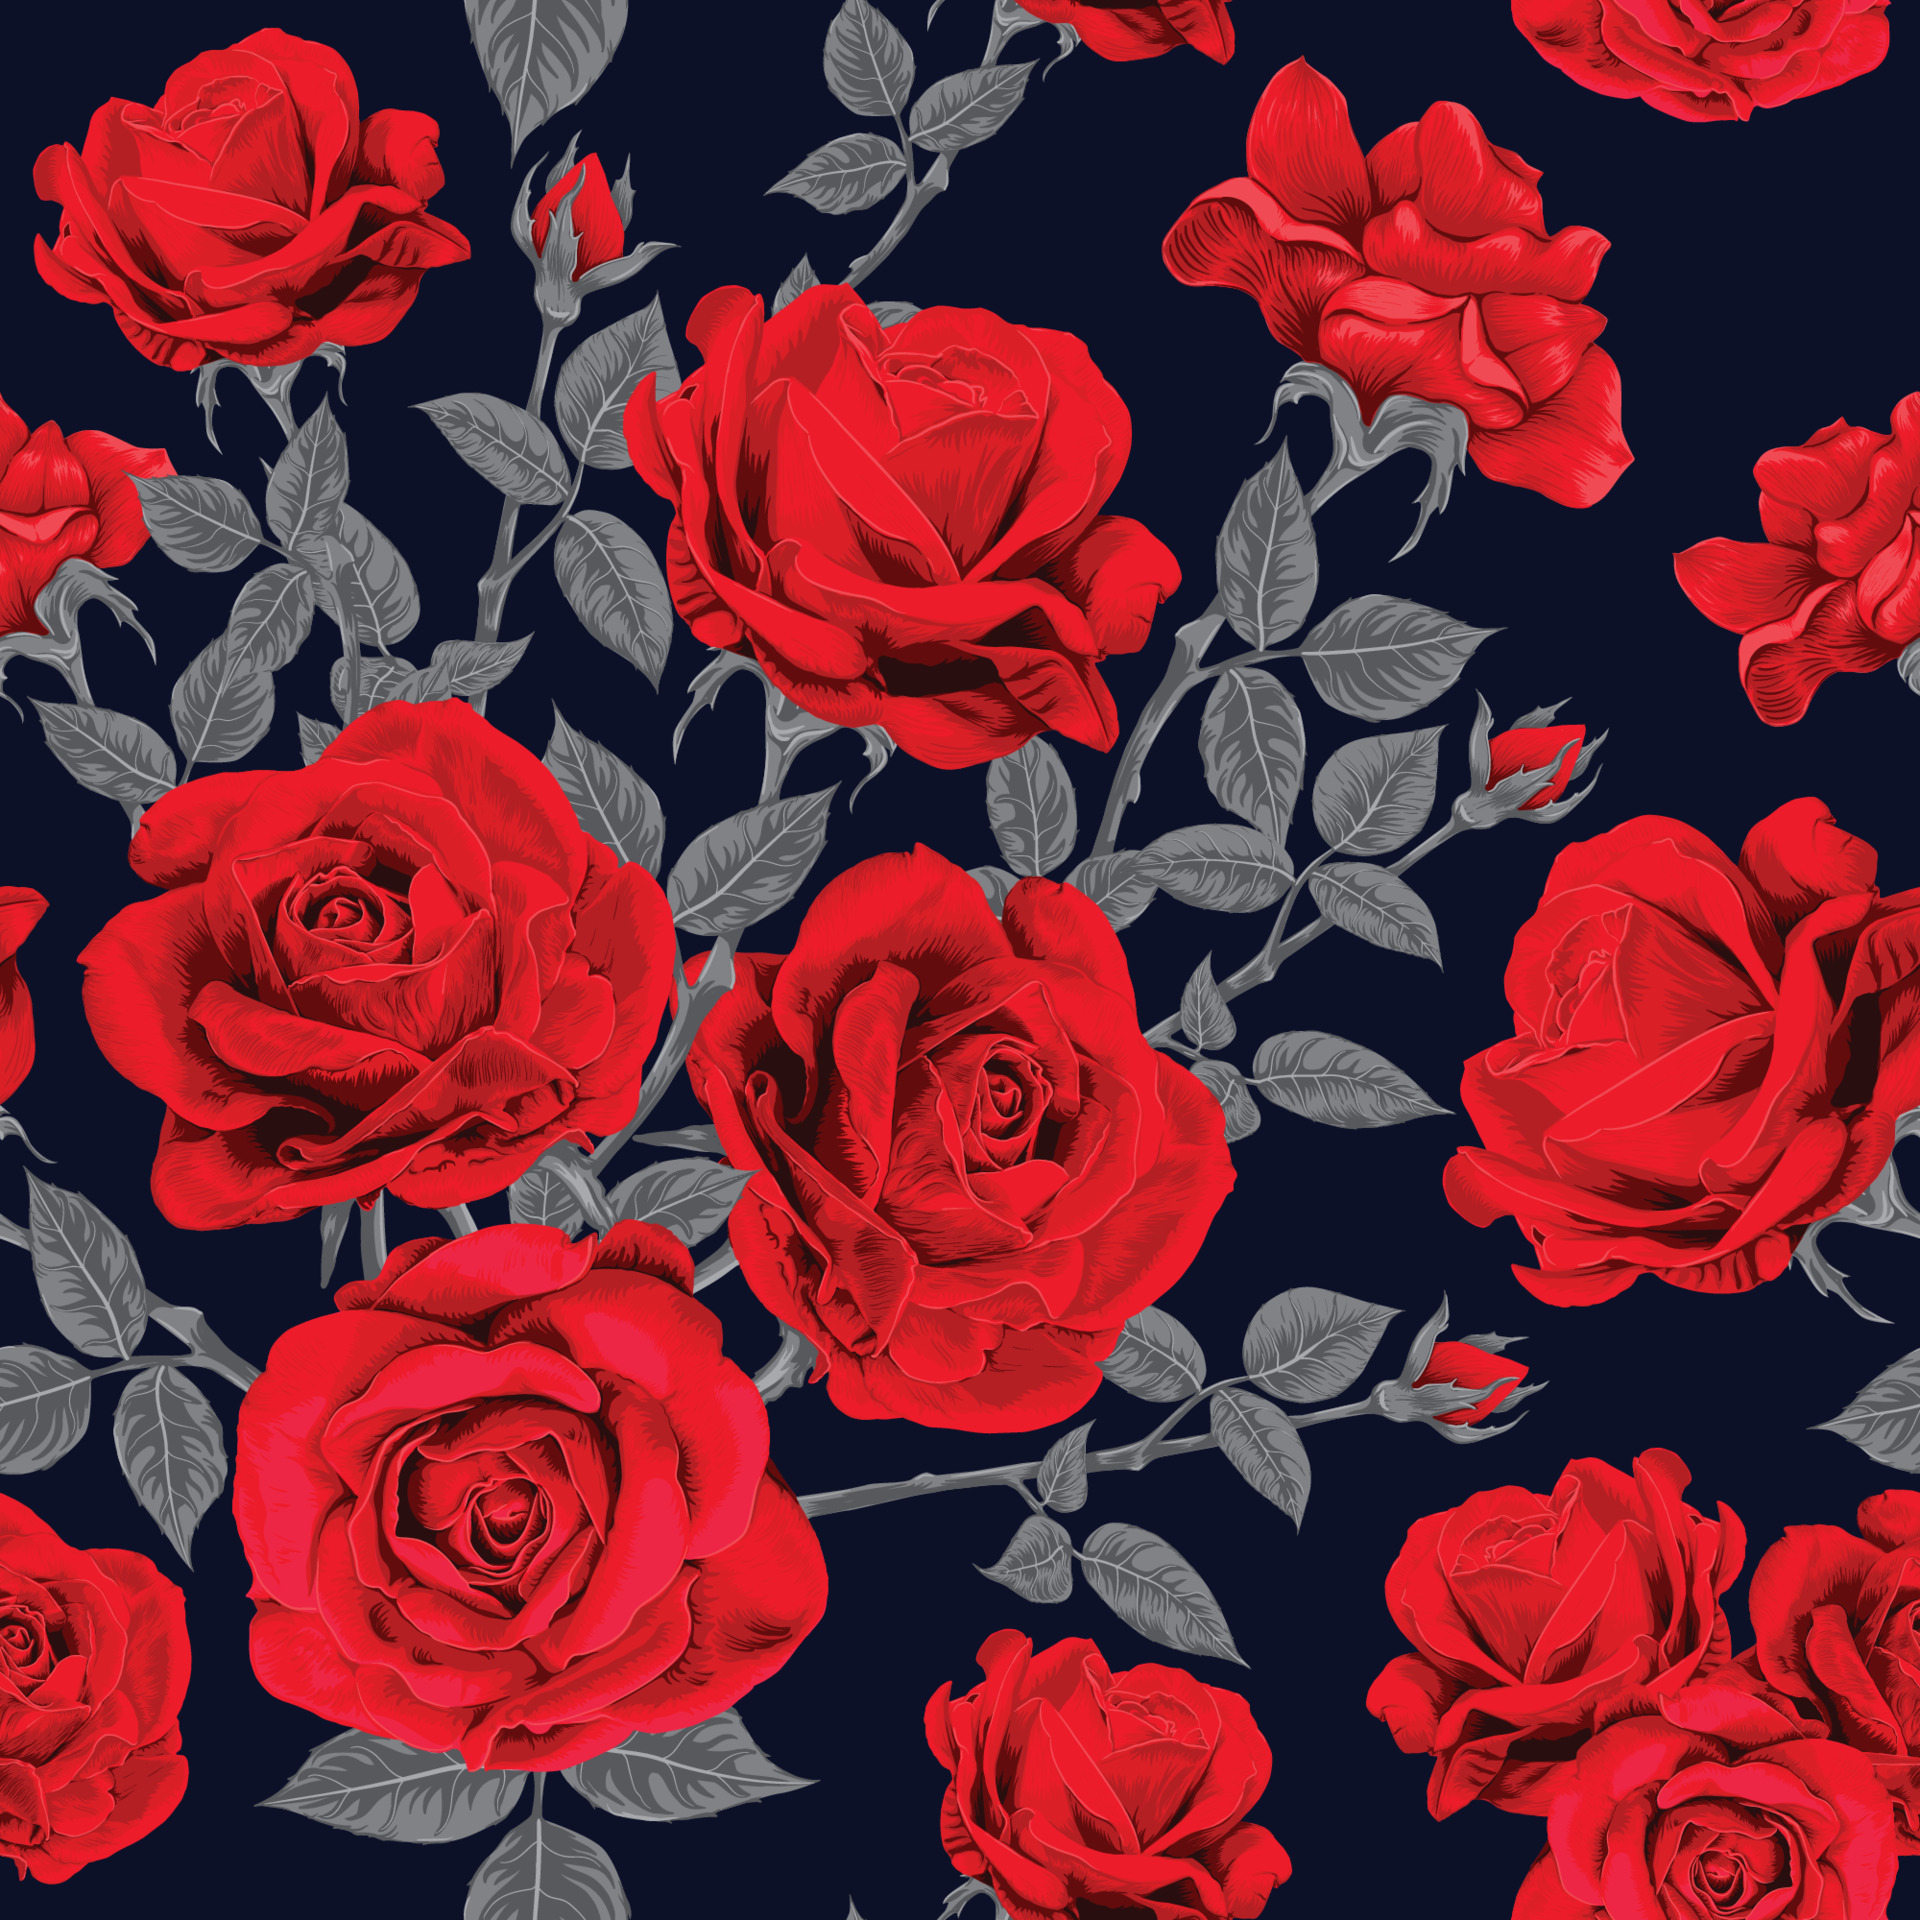 Mẫu hoa hồng đỏ trừu tượng cổ điển màu xanh đậm sẽ mang lại cho bạn một cảm giác độc đáo và lạ mắt. Bộ sưu tập hình ảnh liên quan sẽ khiến bạn thích thú khi sử dụng chúng trong các dự án thiết kế của mình.